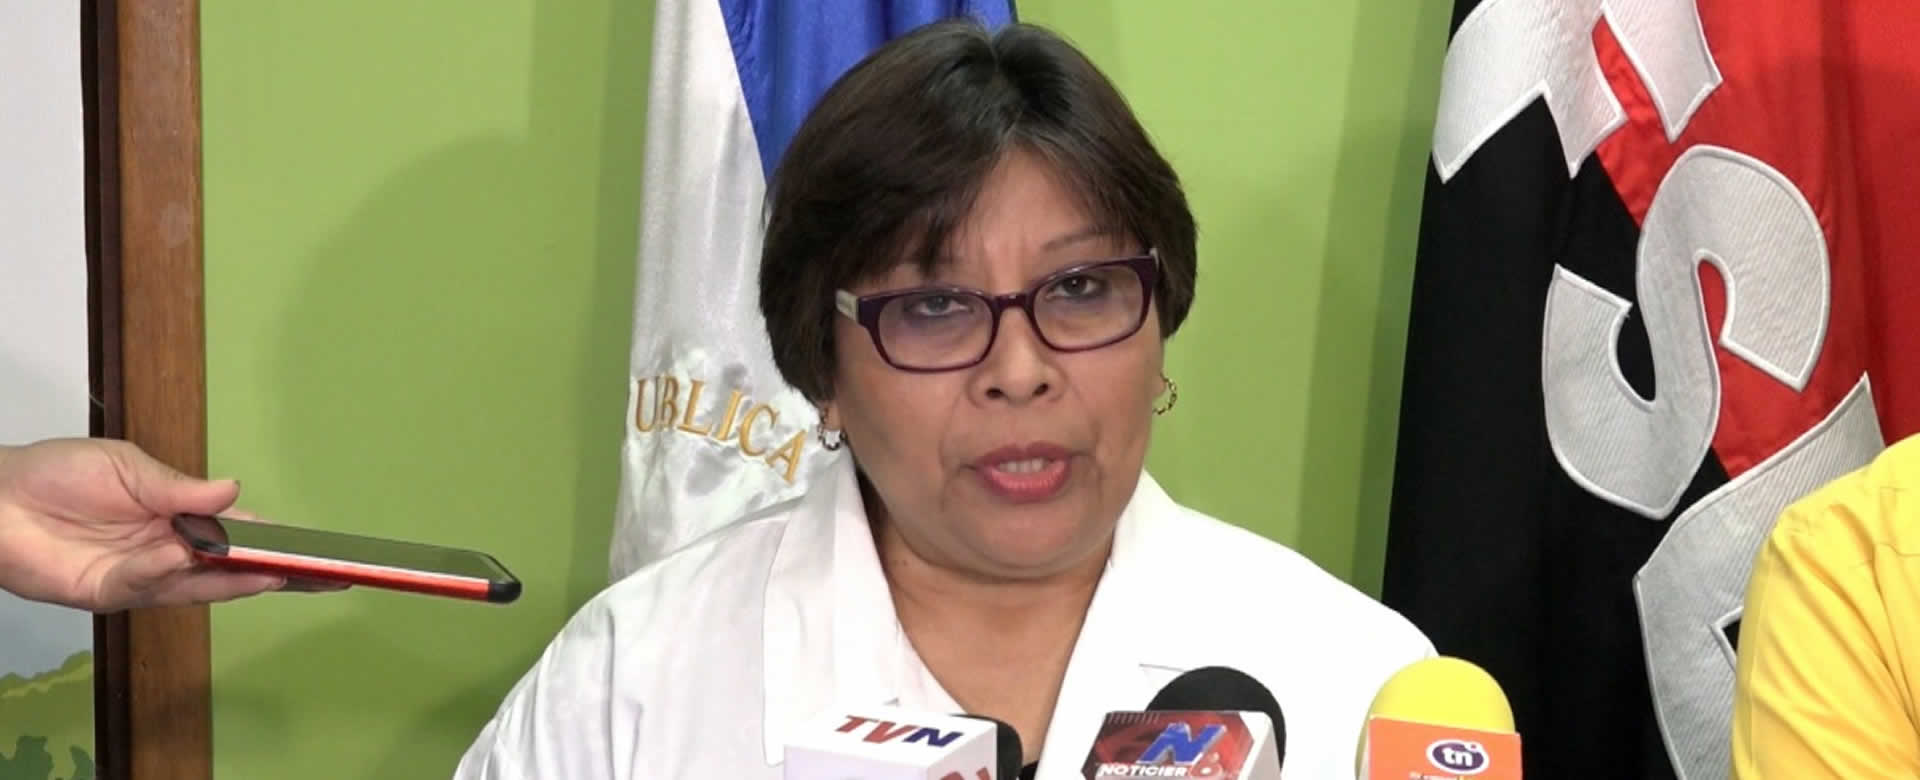 MINSA continúa acercando la salud a las familias nicaragüenses